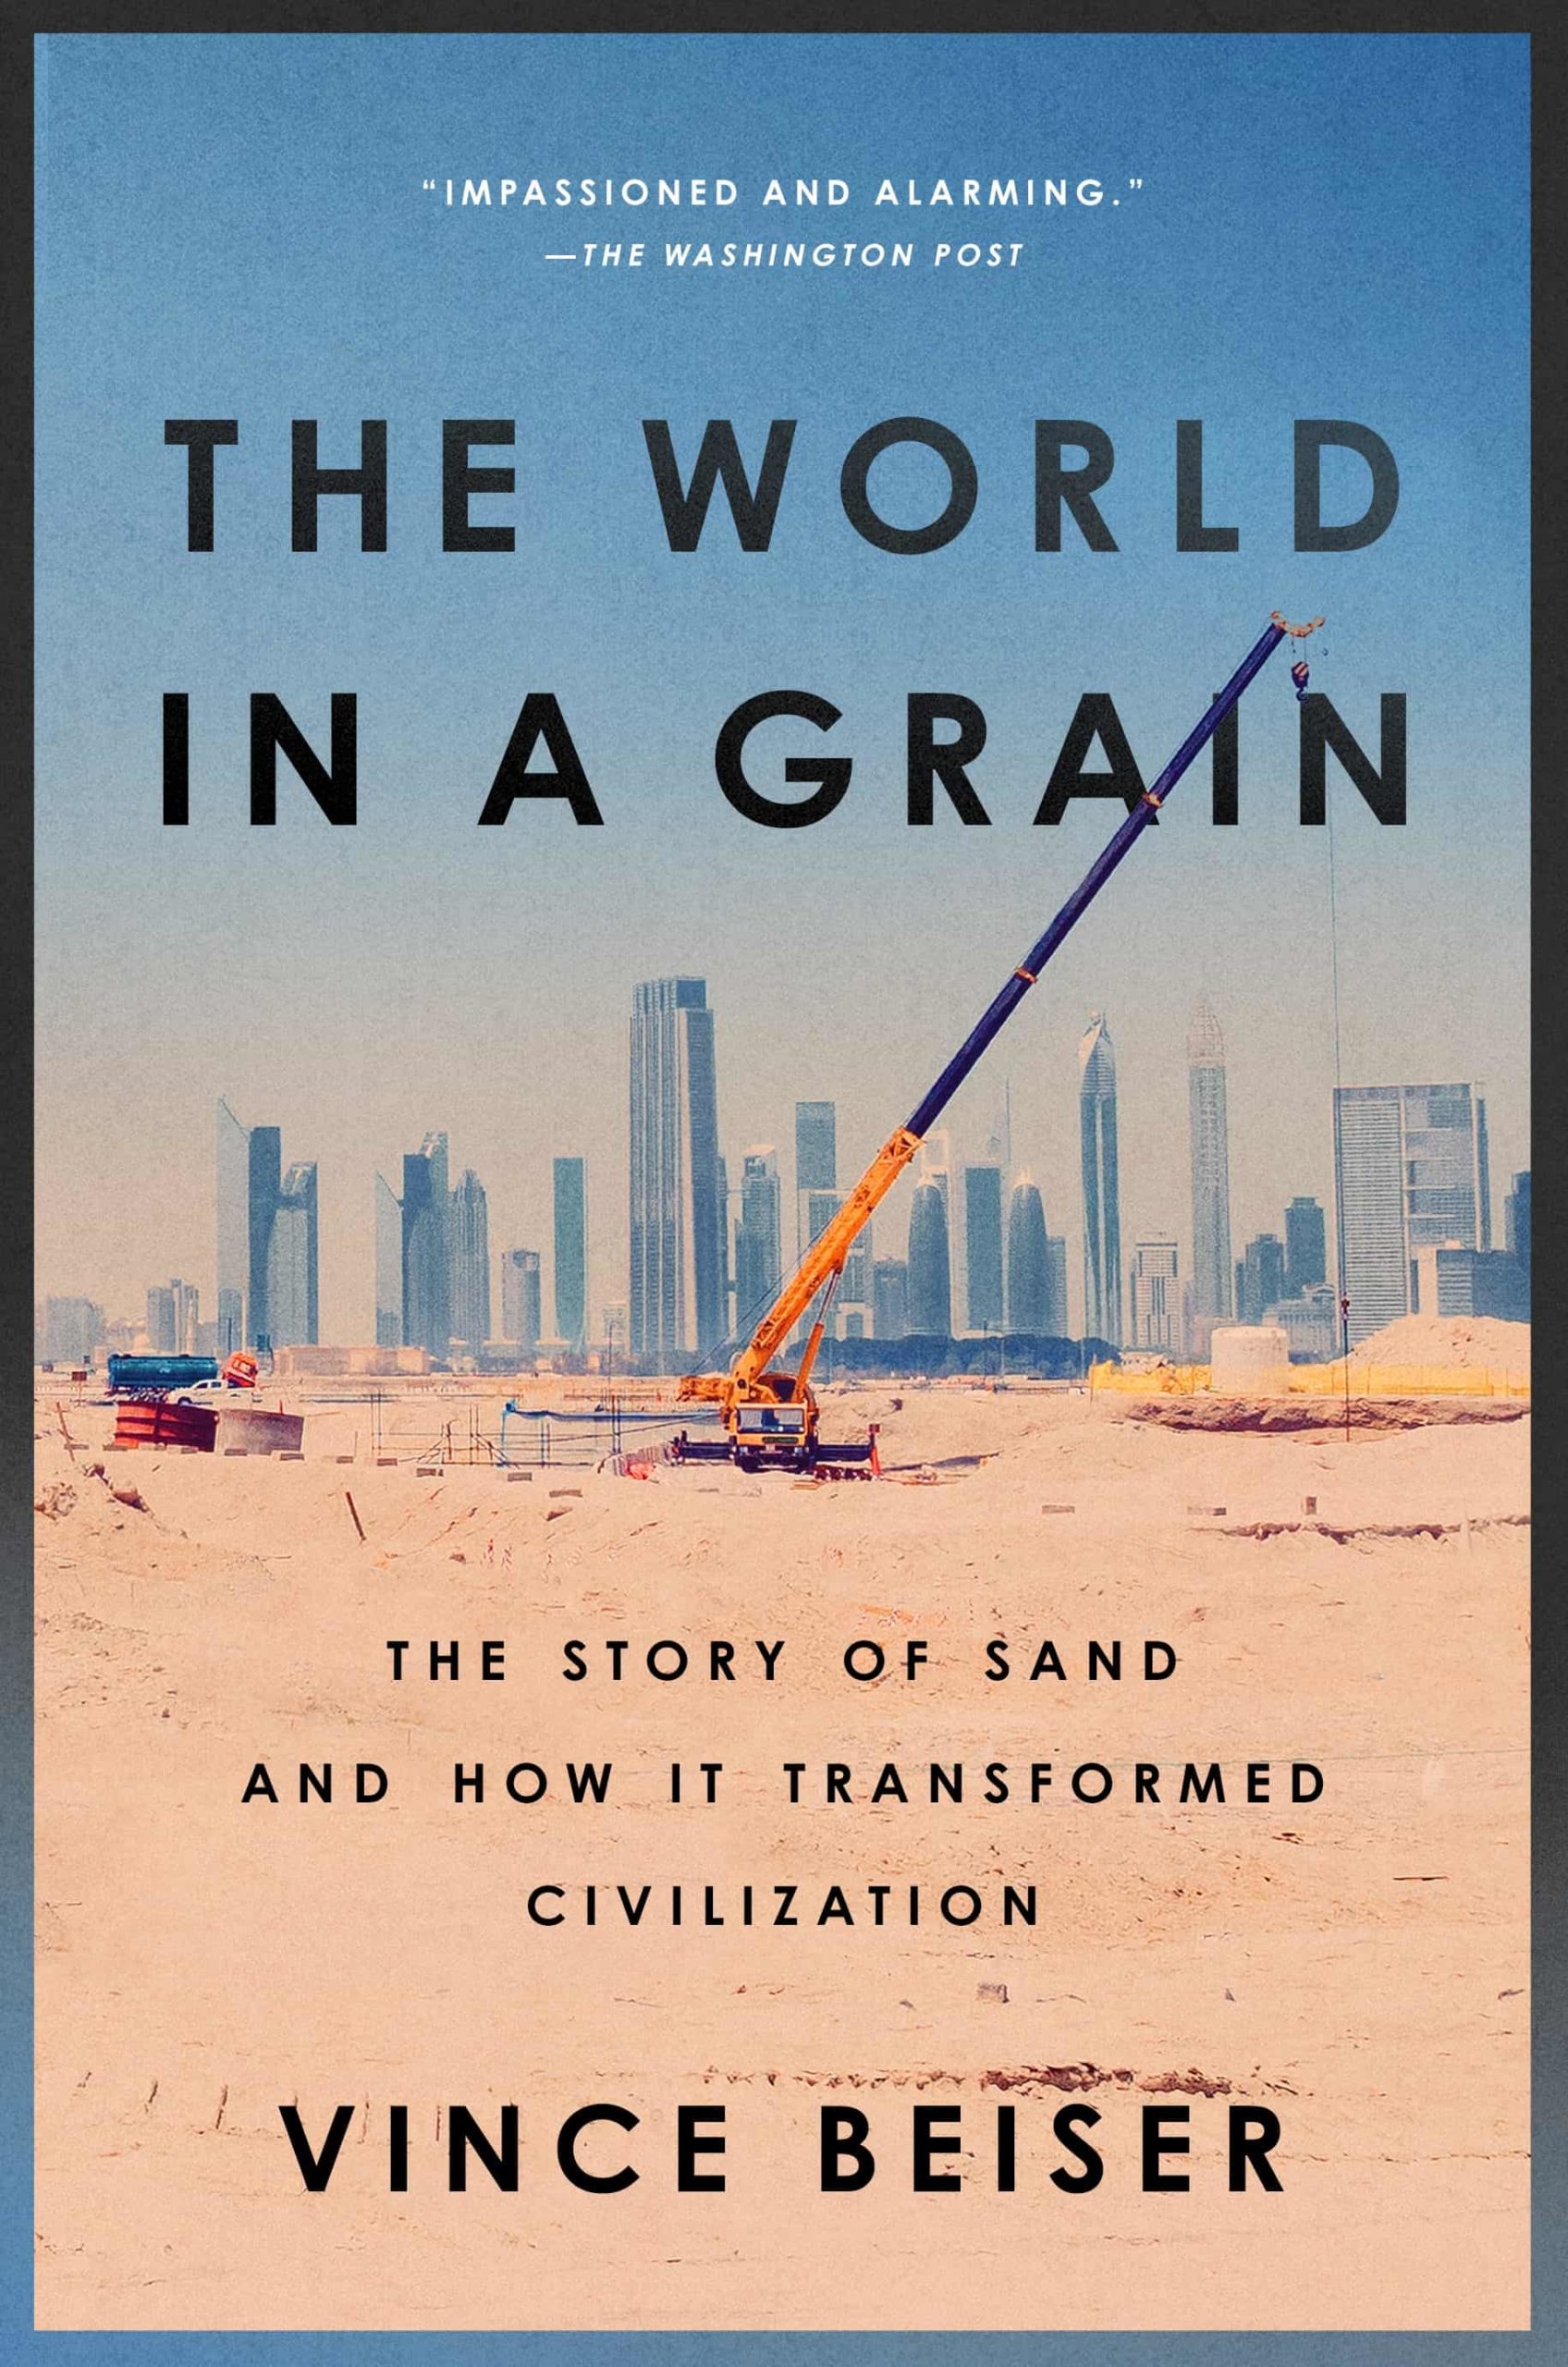 Couverture du livre "The World in a Grain" de Vince Beiser